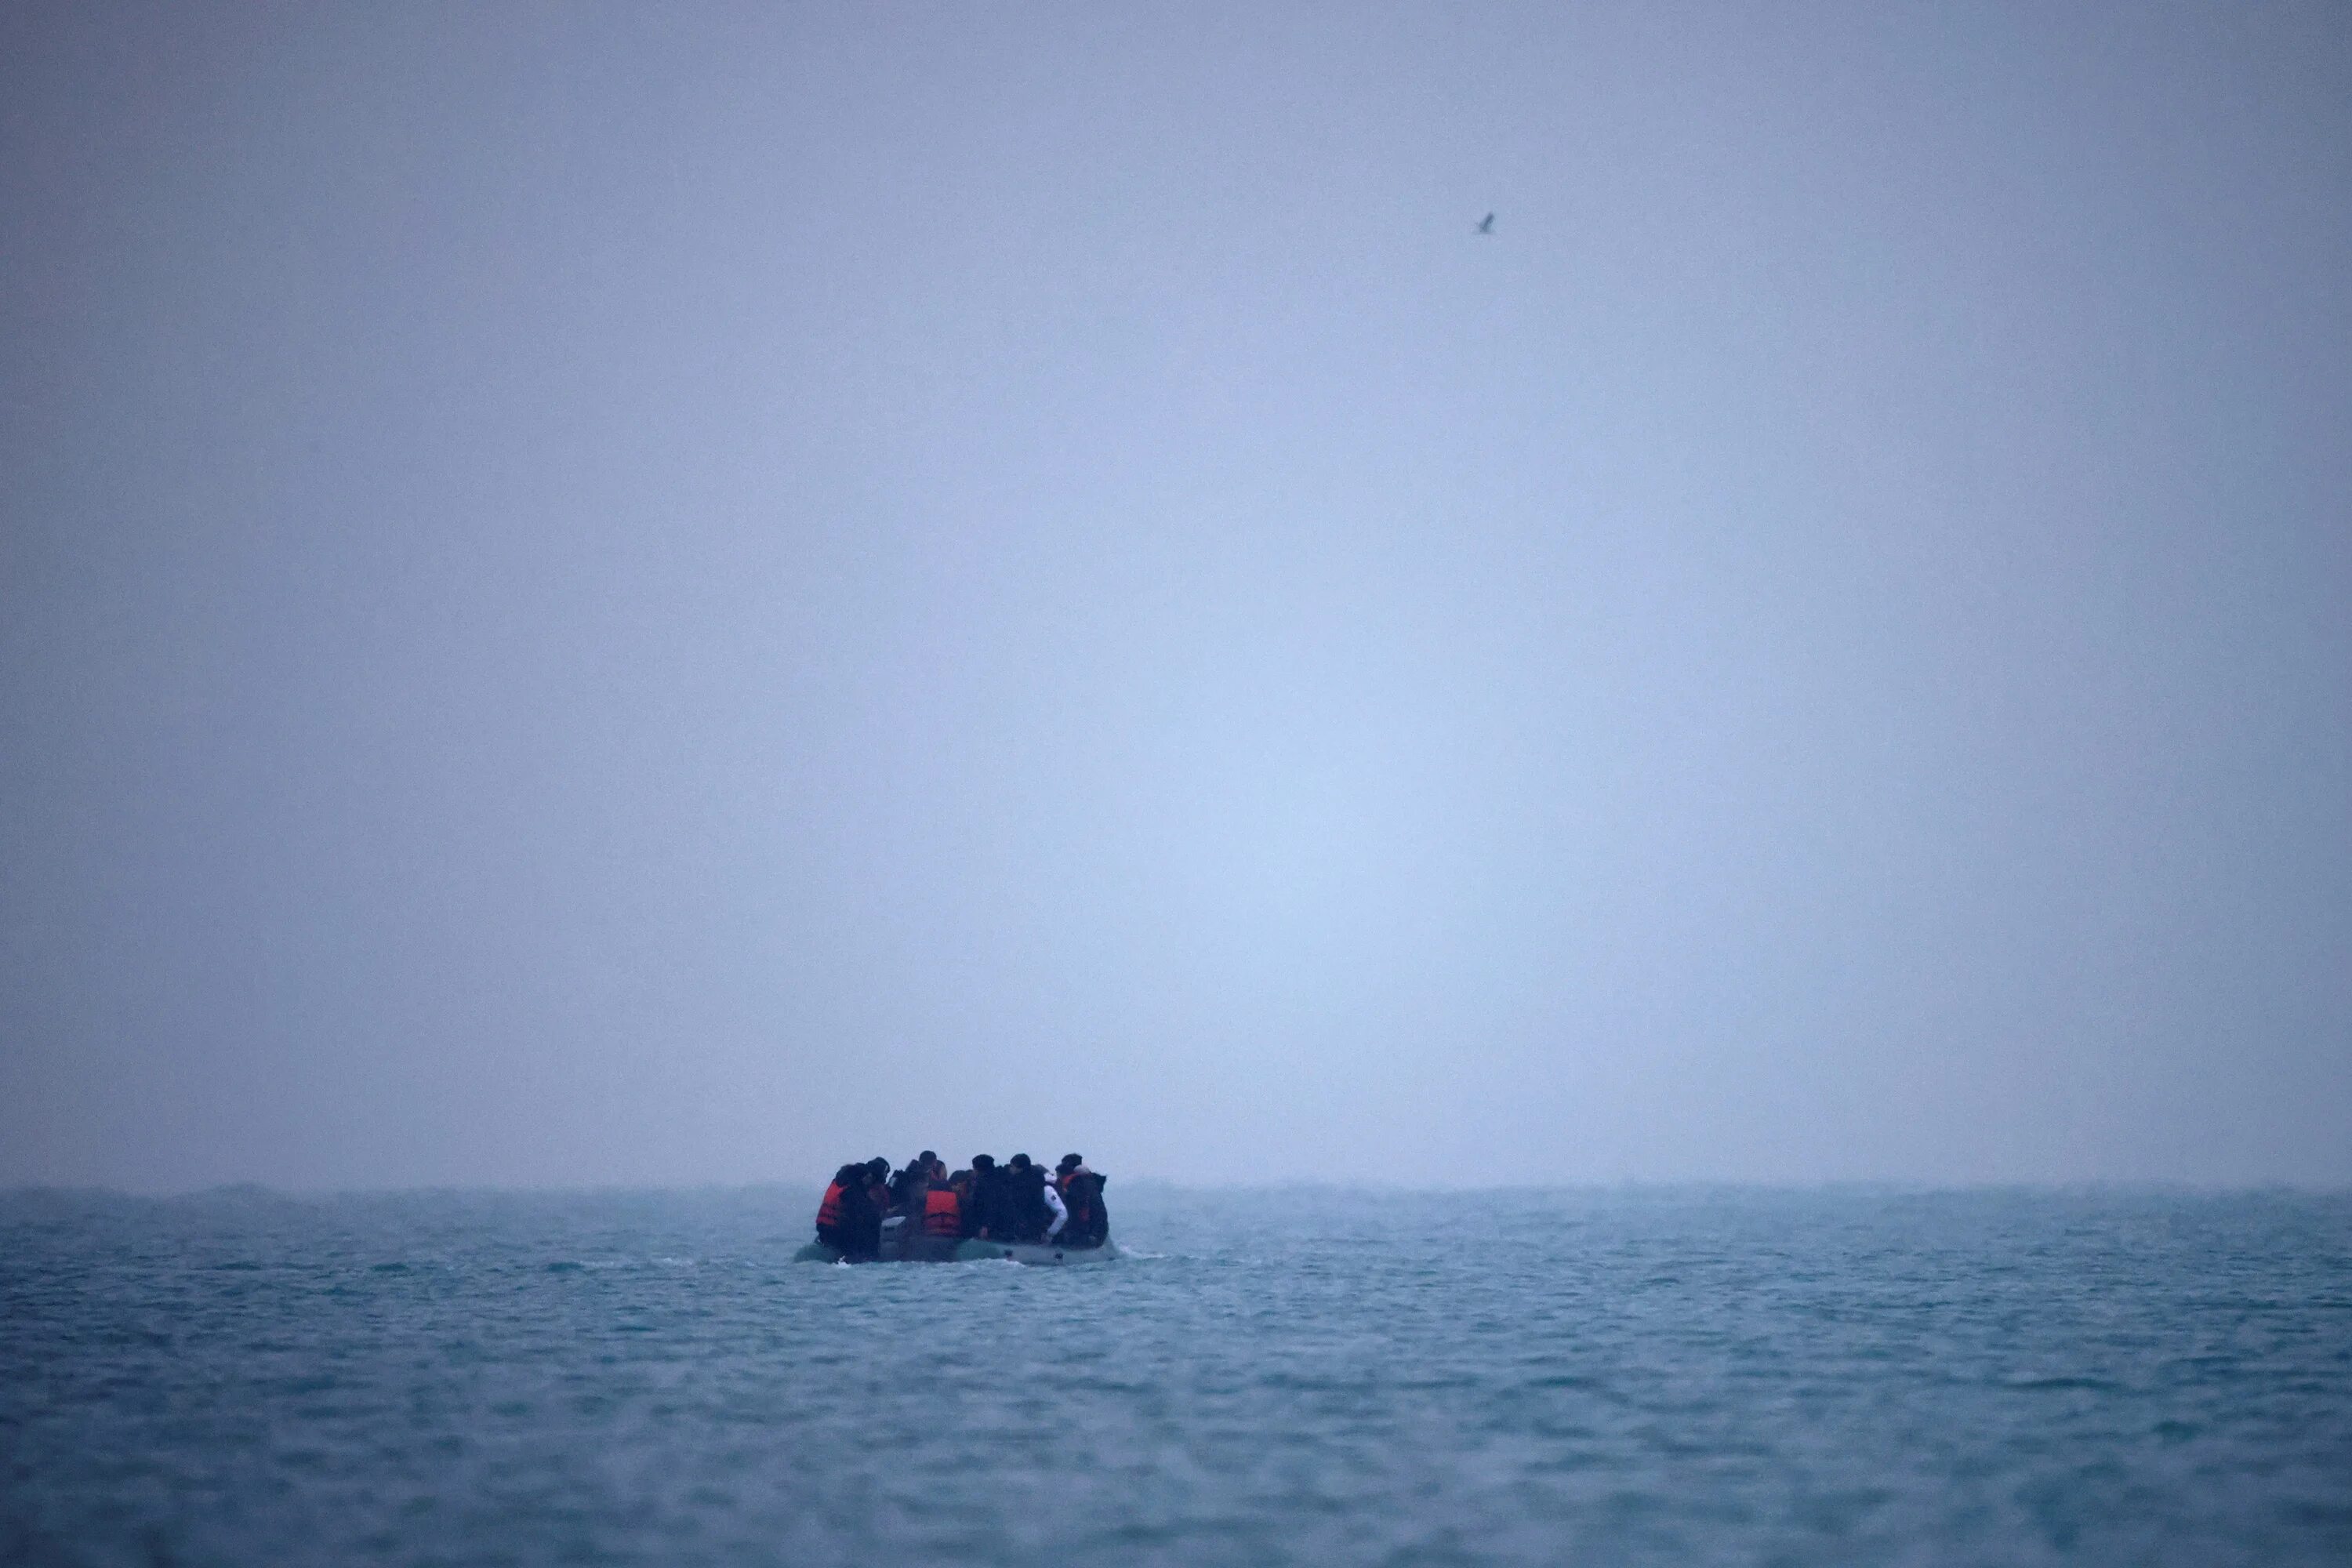 Мигранты на лодках. В ла-Манше потерпела крушение лодка с мигрантами. Затонула лодка с мигрантами. Крушение судна с мигрантами у берегов Греции фото. Когда выйдет ночь у берега 82 глава